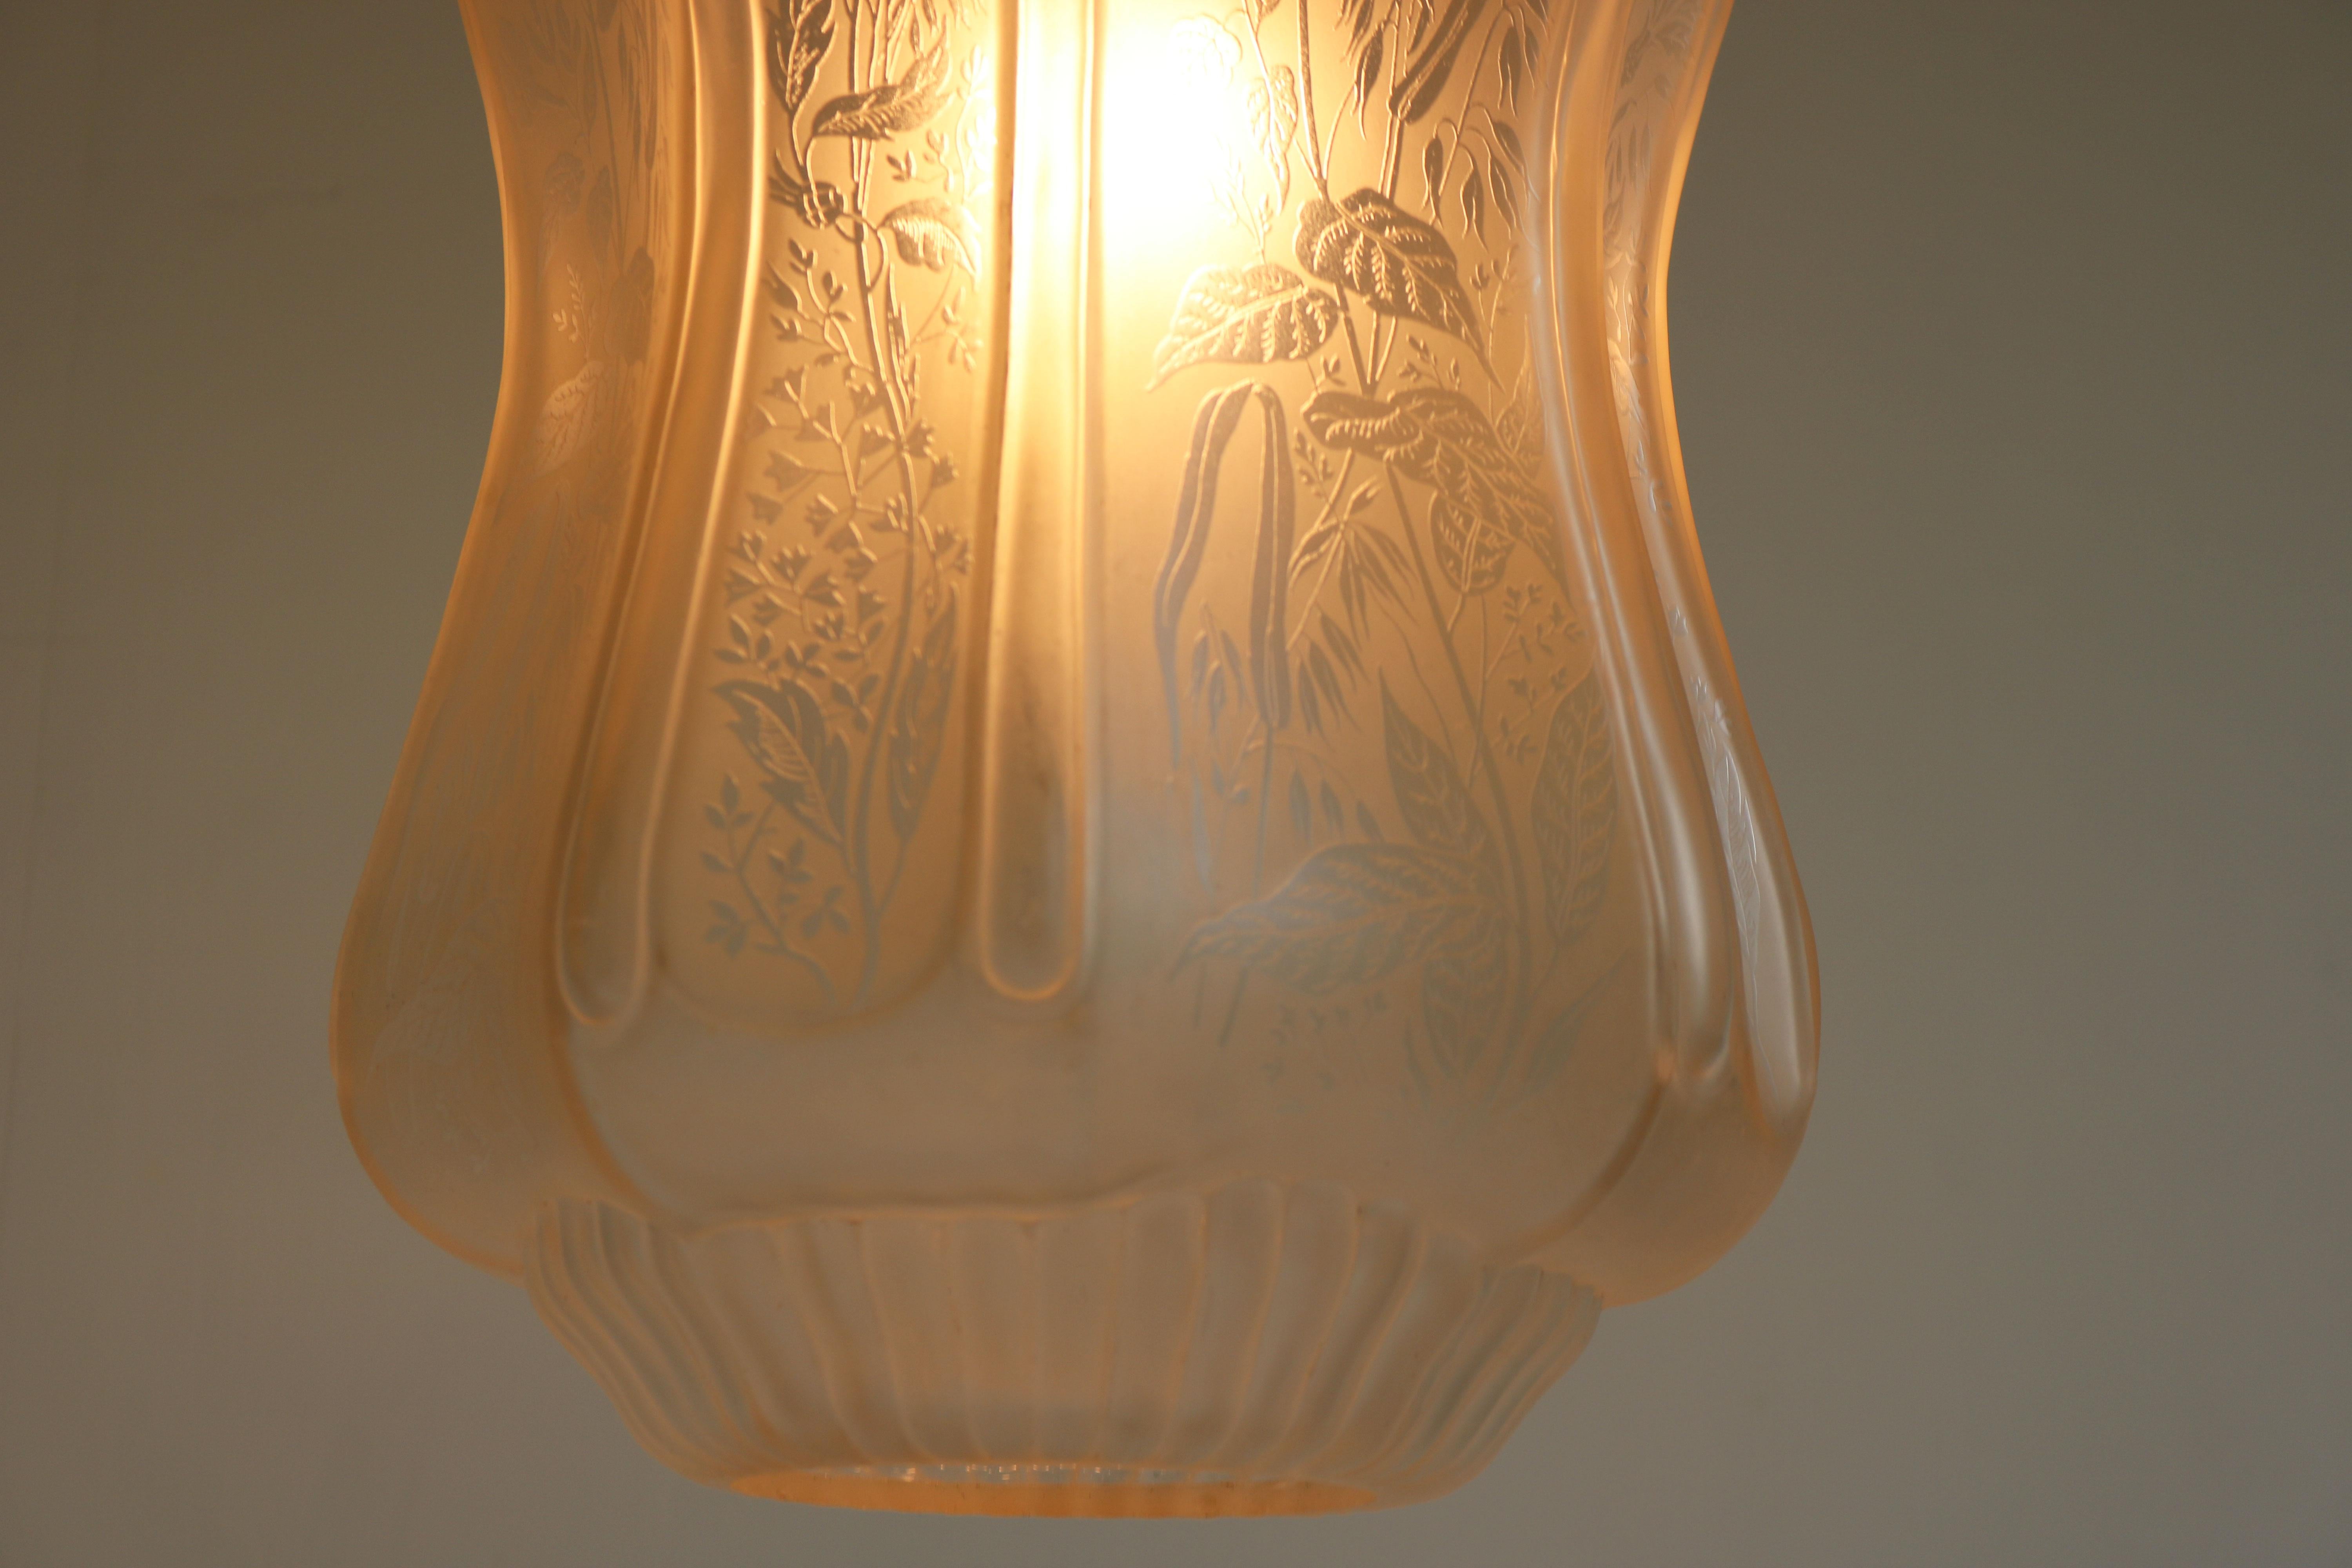 Large Antique French Art Nouveau Pedant Light 1910 Floral Glass Light Chandelier For Sale 1